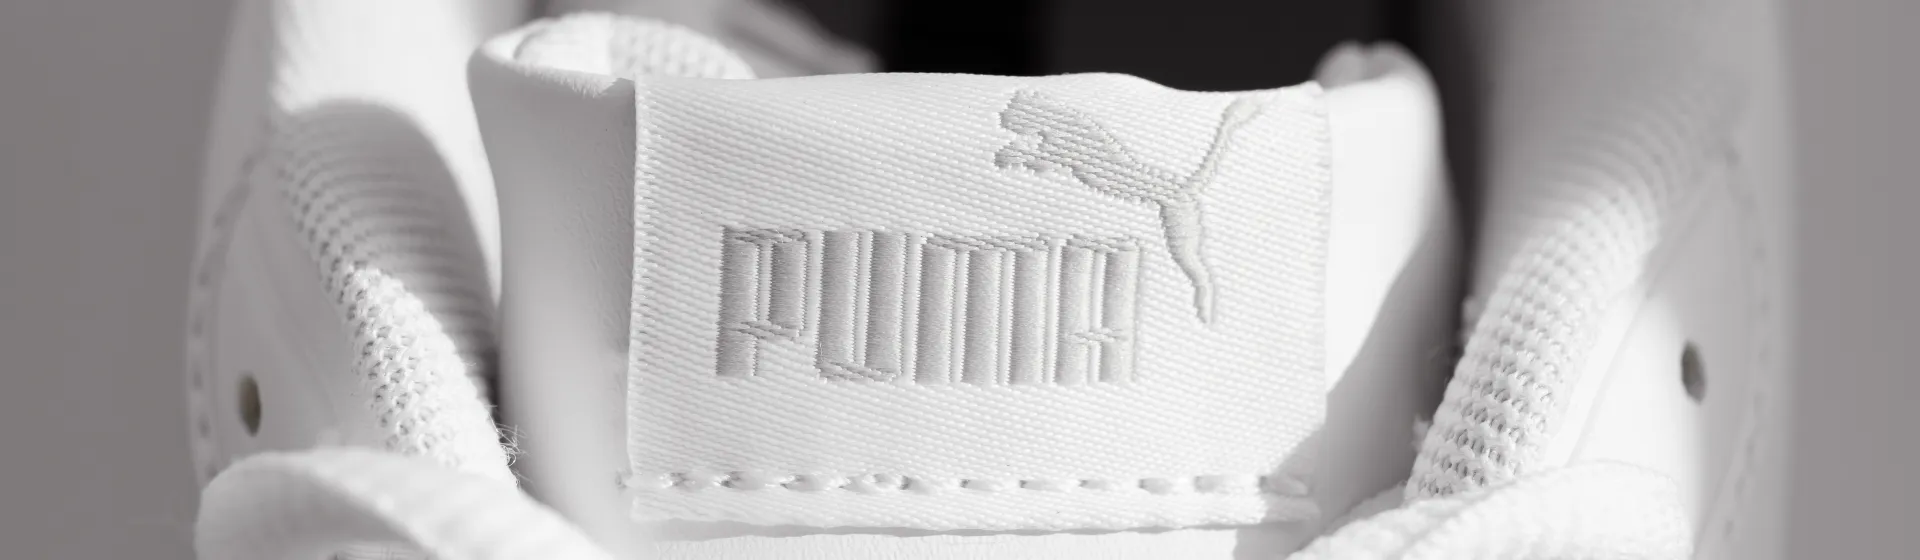 Tênis Puma branco: 7 melhores opções da marca que fazem sucesso